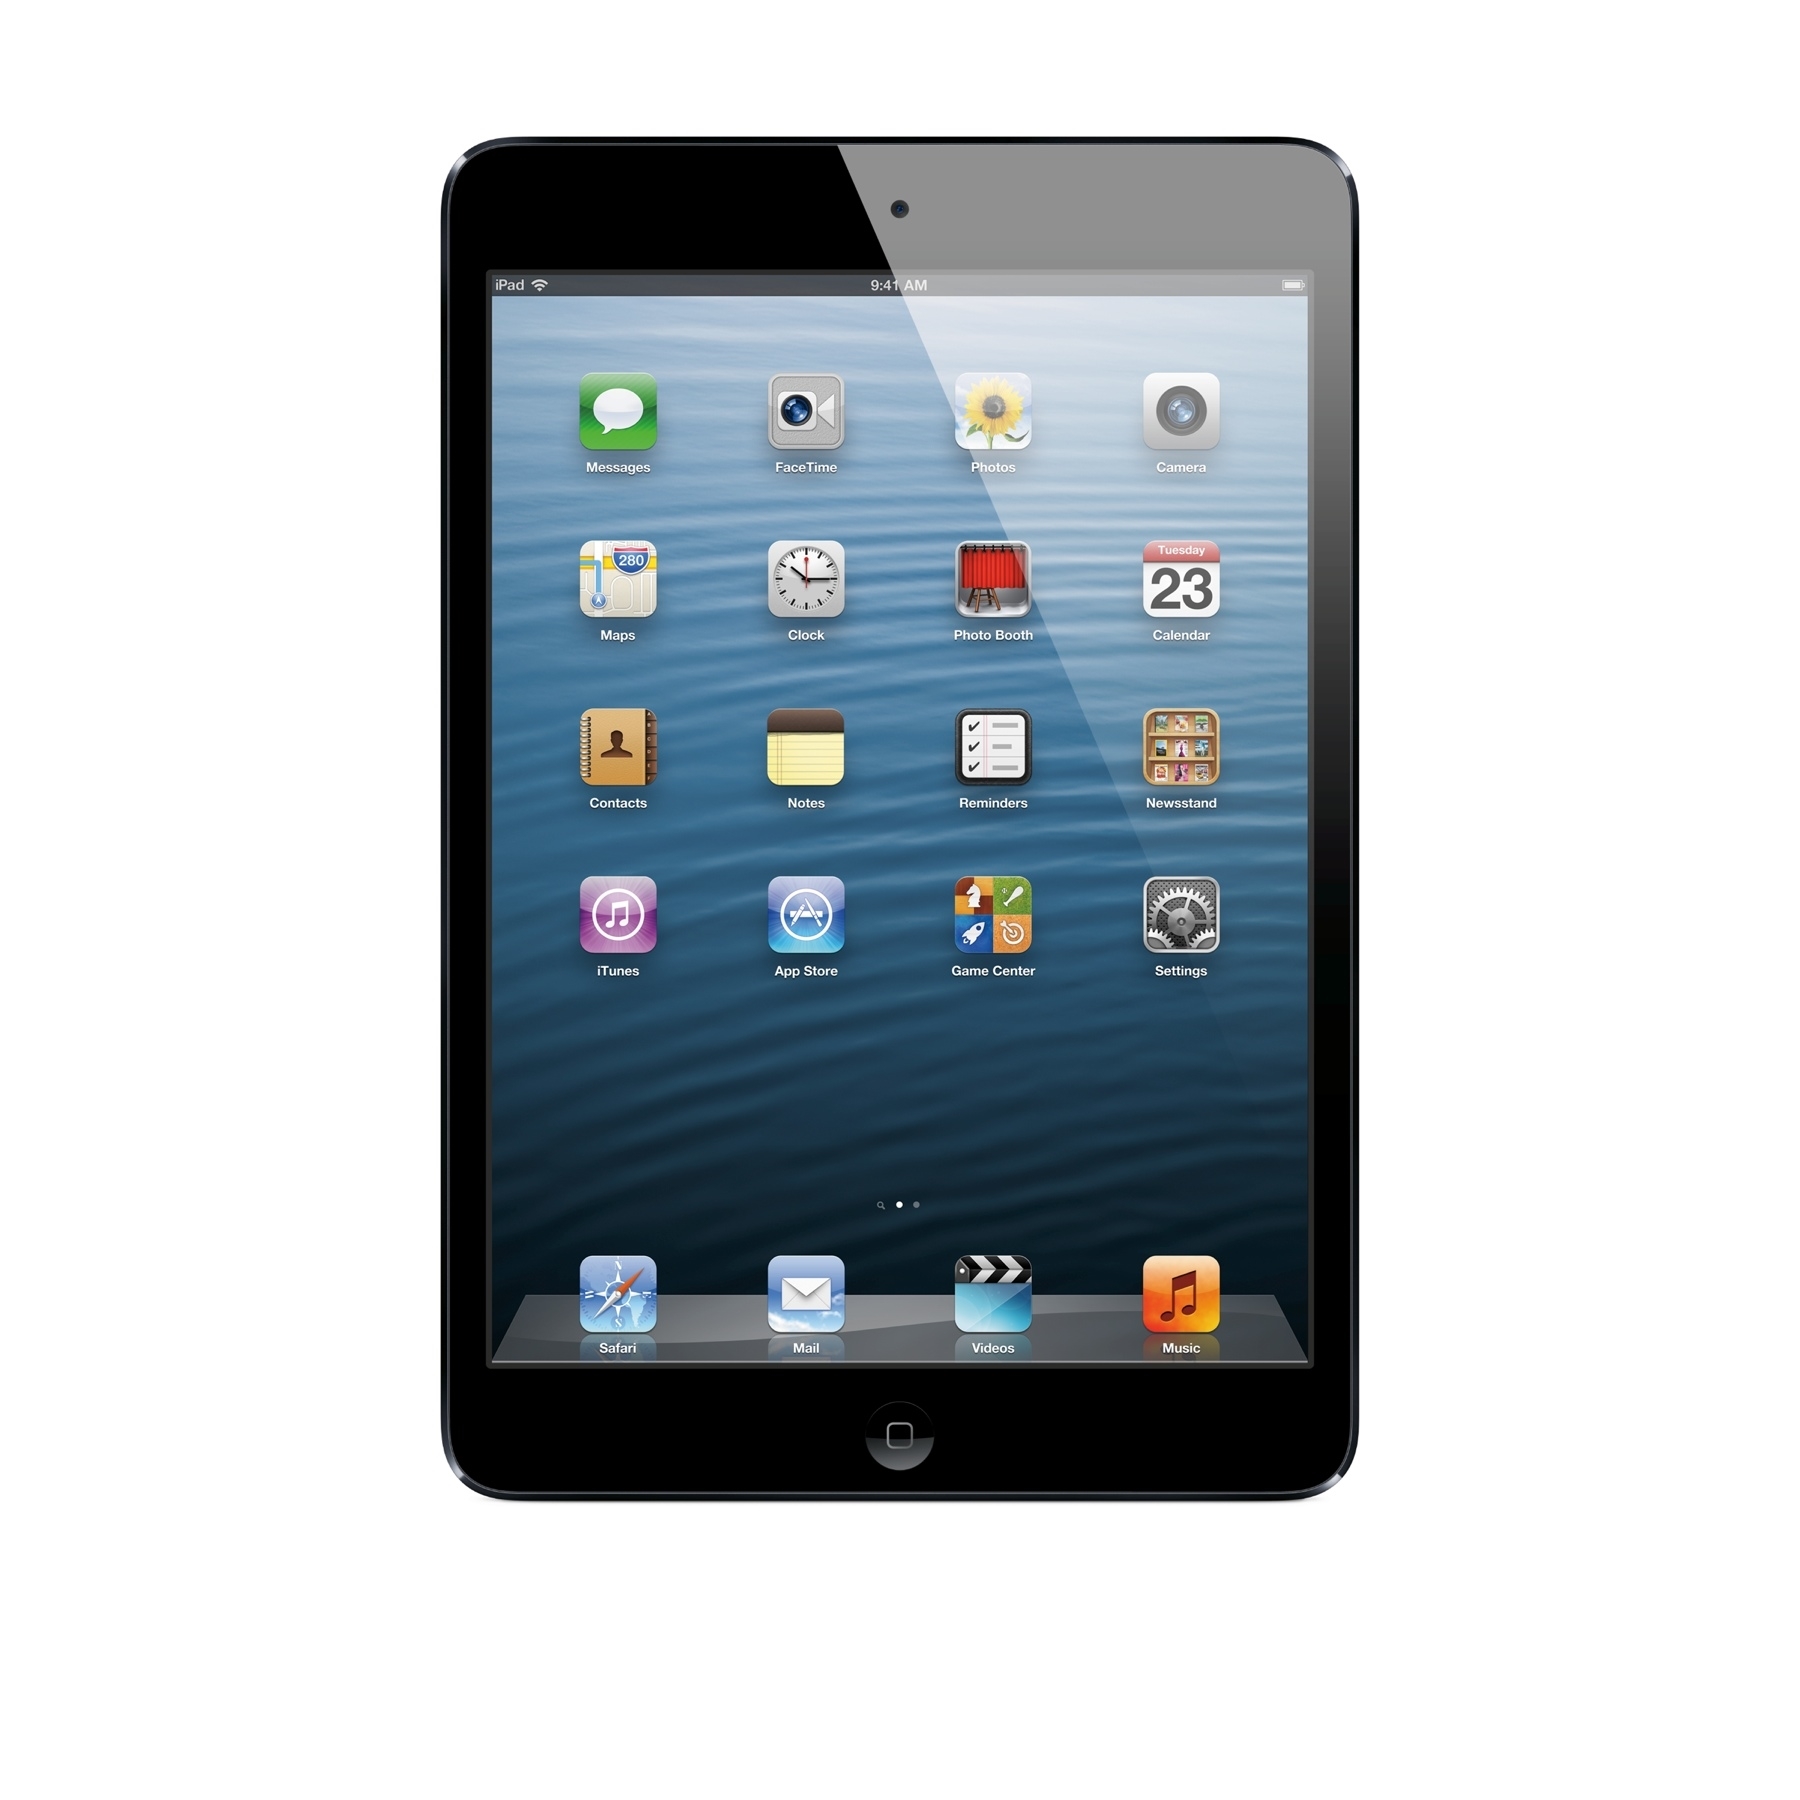 Apple iPad mini 16GB Wi-Fi Tablet, Black - MD528LL/A